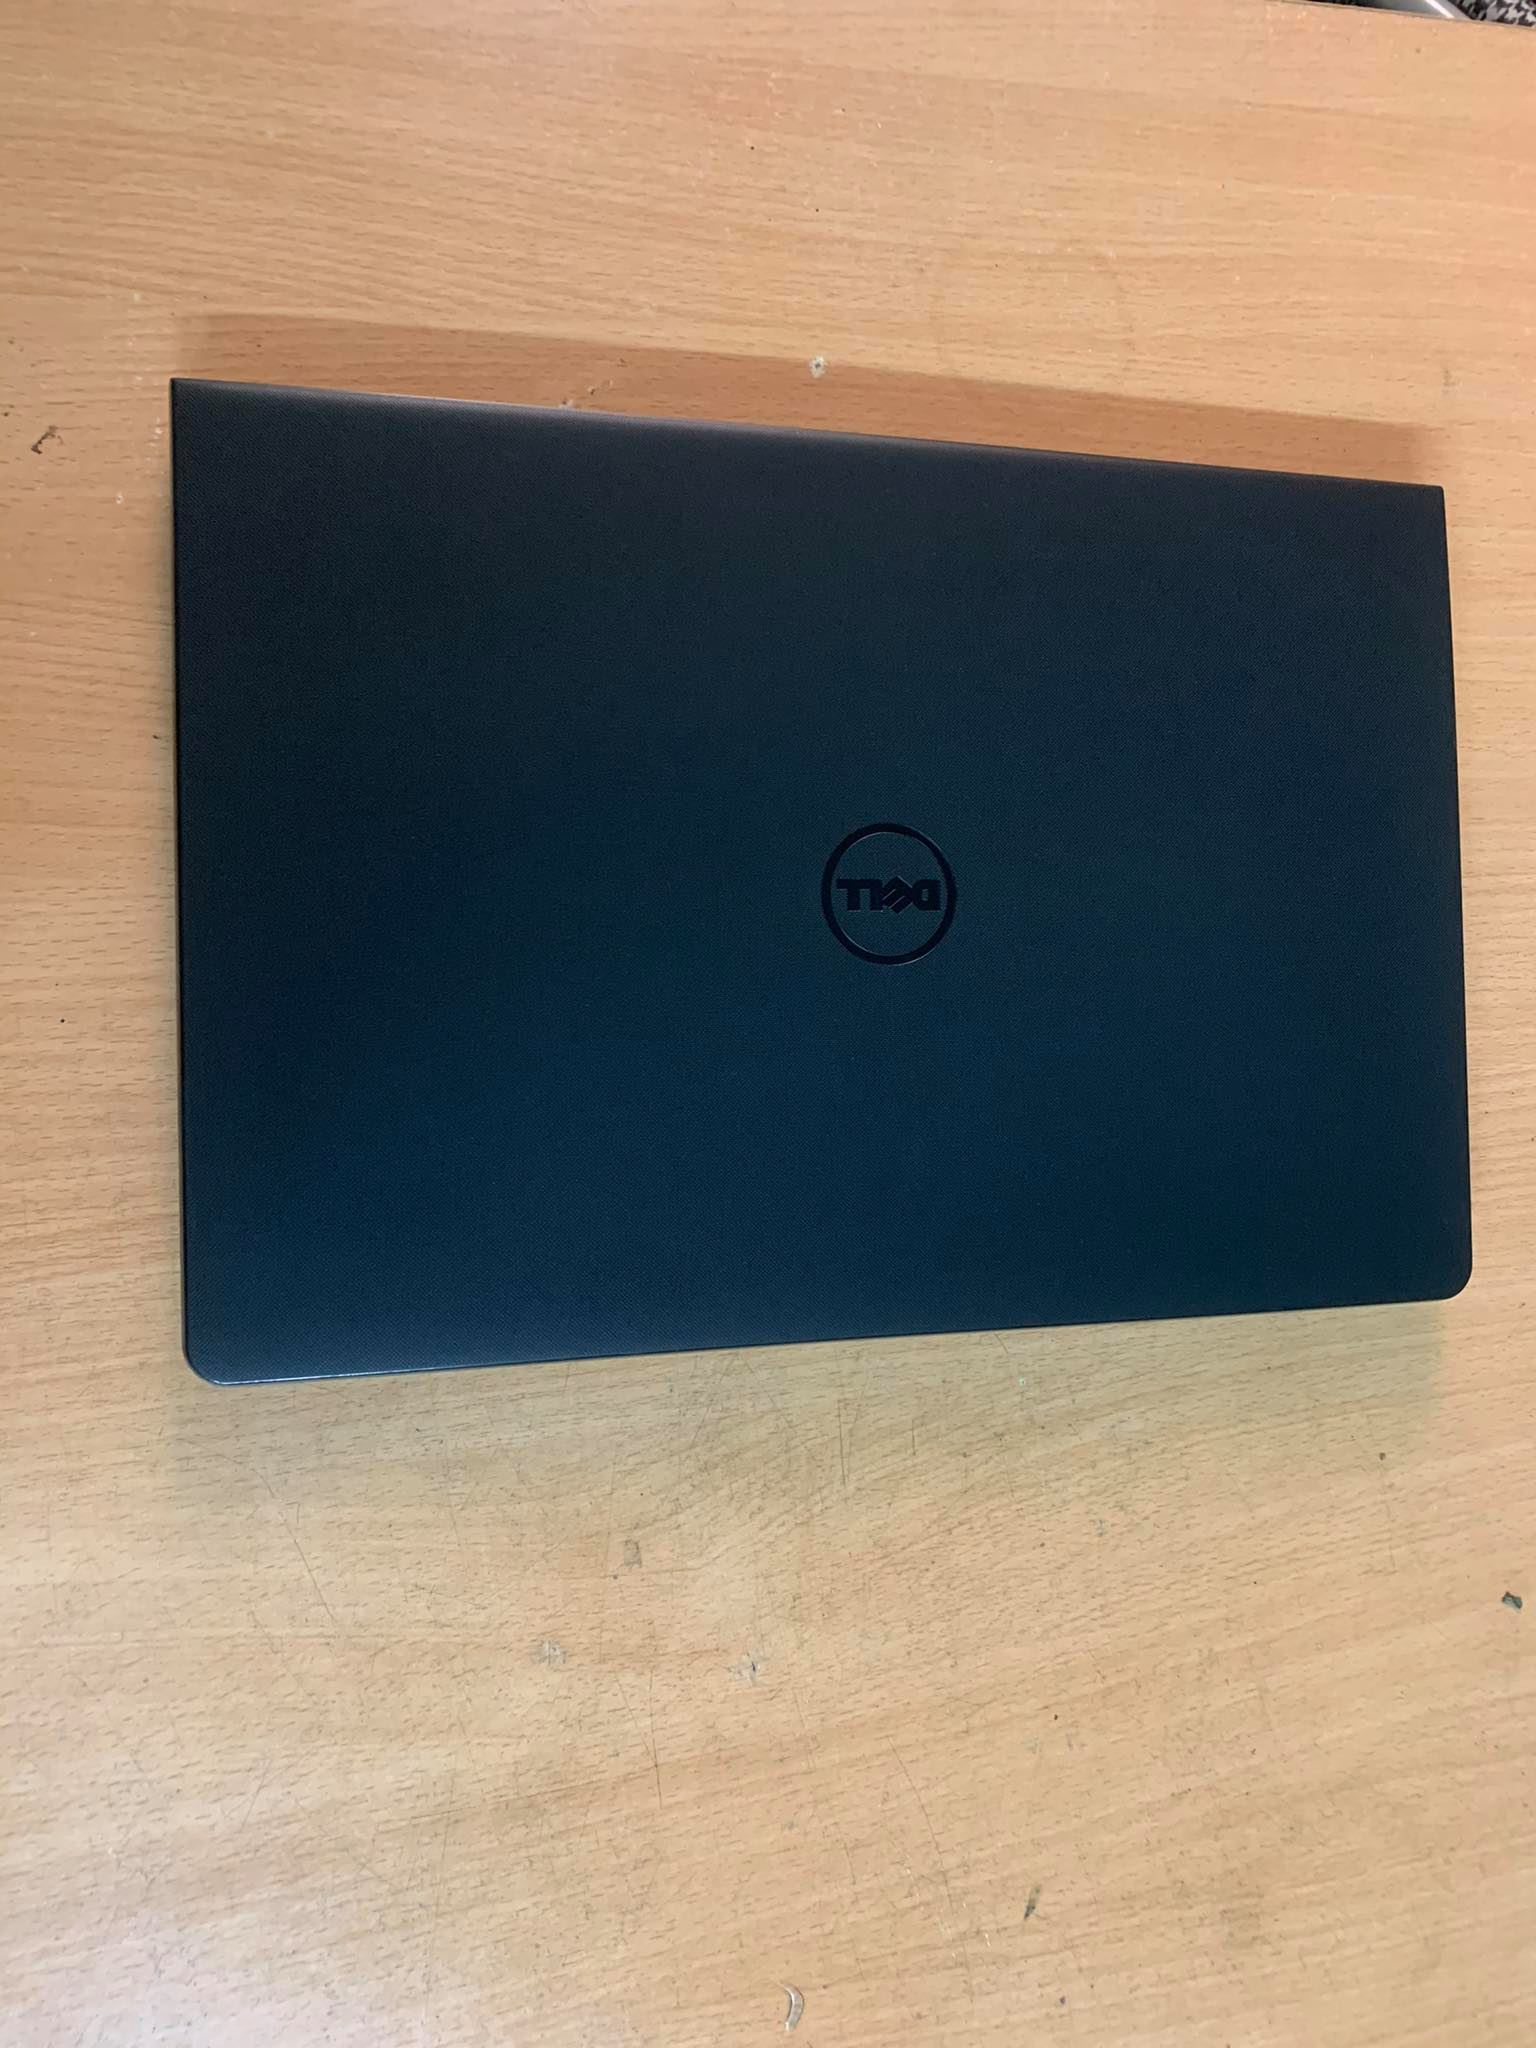 Laptop Cũ Dell Inspiron N3567 i3 6006U ram 4gb HDD 1TB màn hình 15,6inh máy đẹp,zin